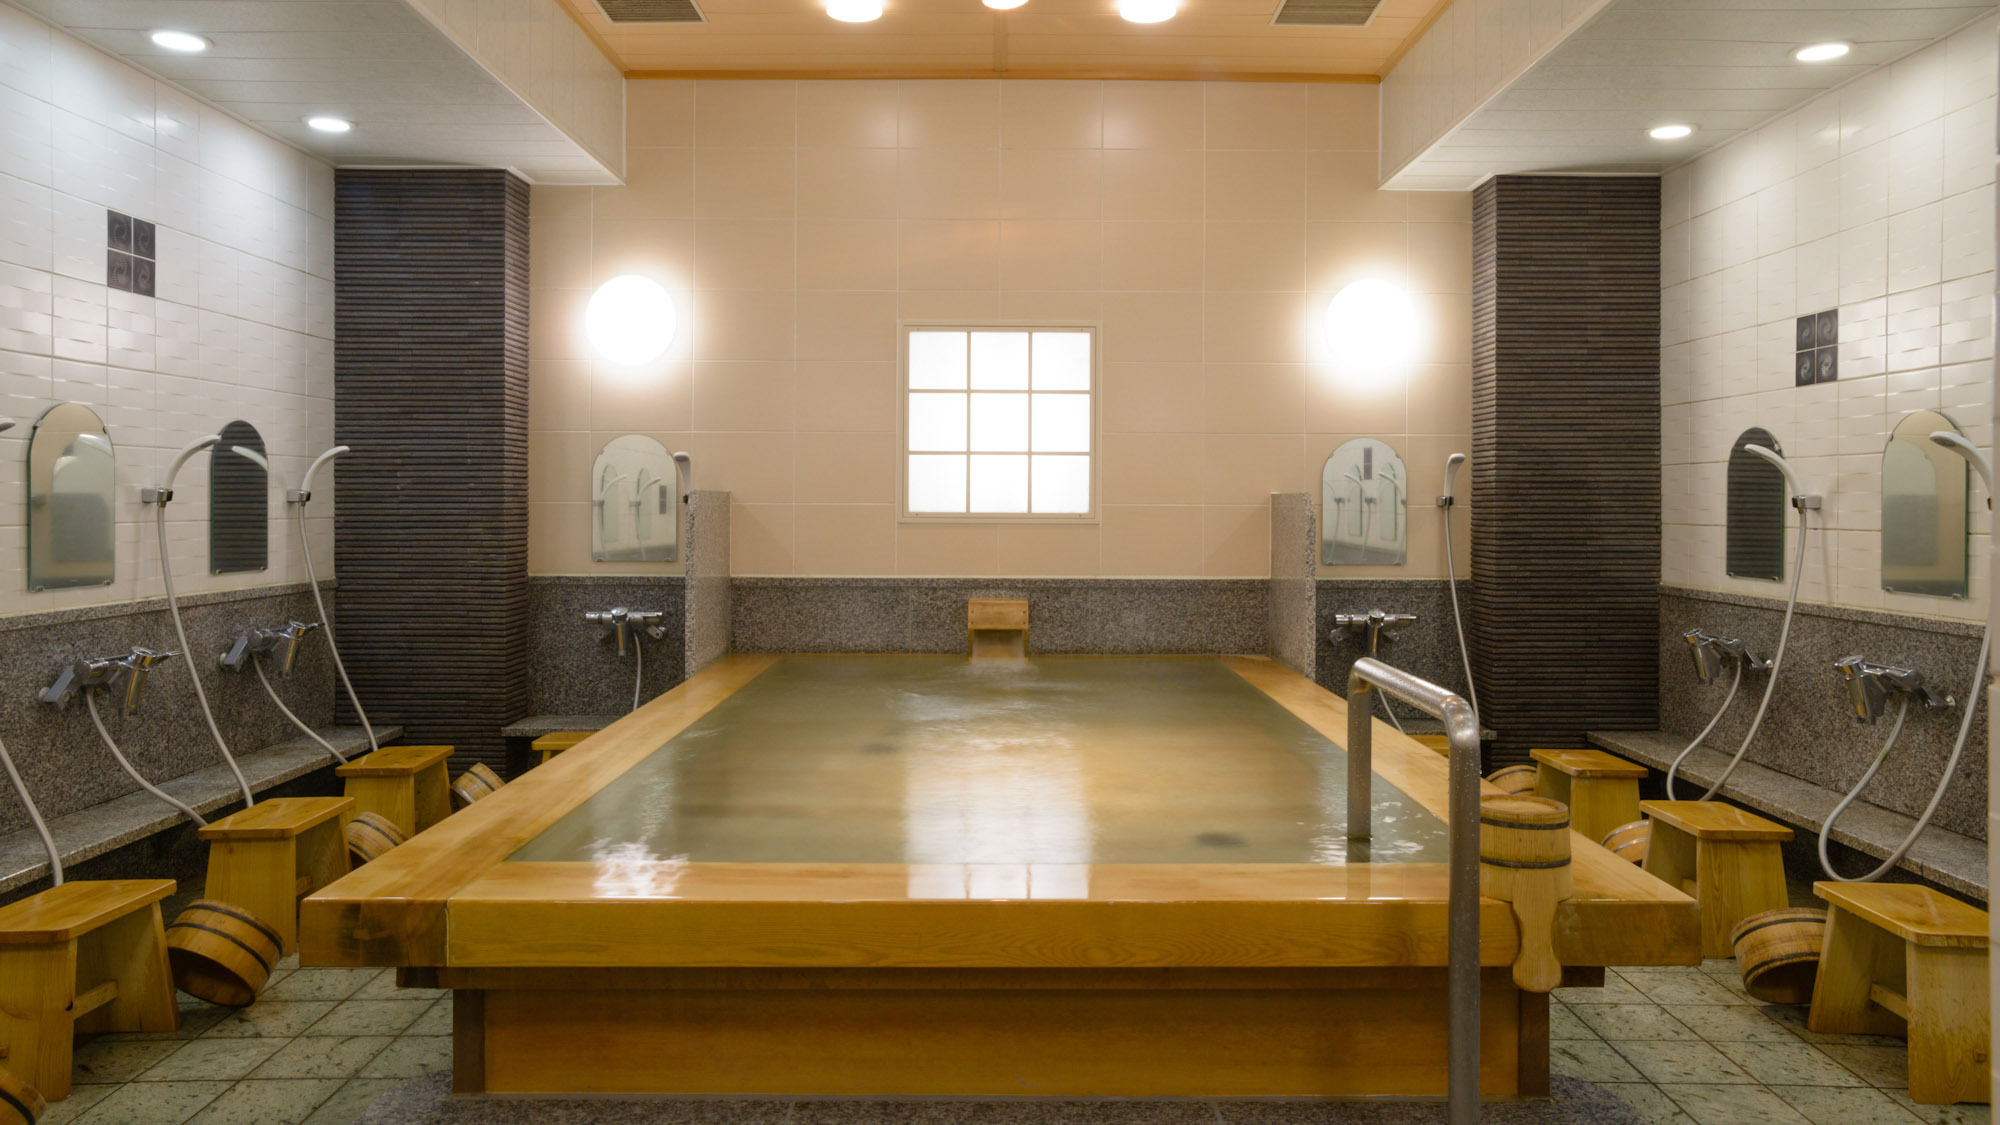 ・【大浴場】女湯は明るくモダンなデザイン。床には天然の青石を使用しています